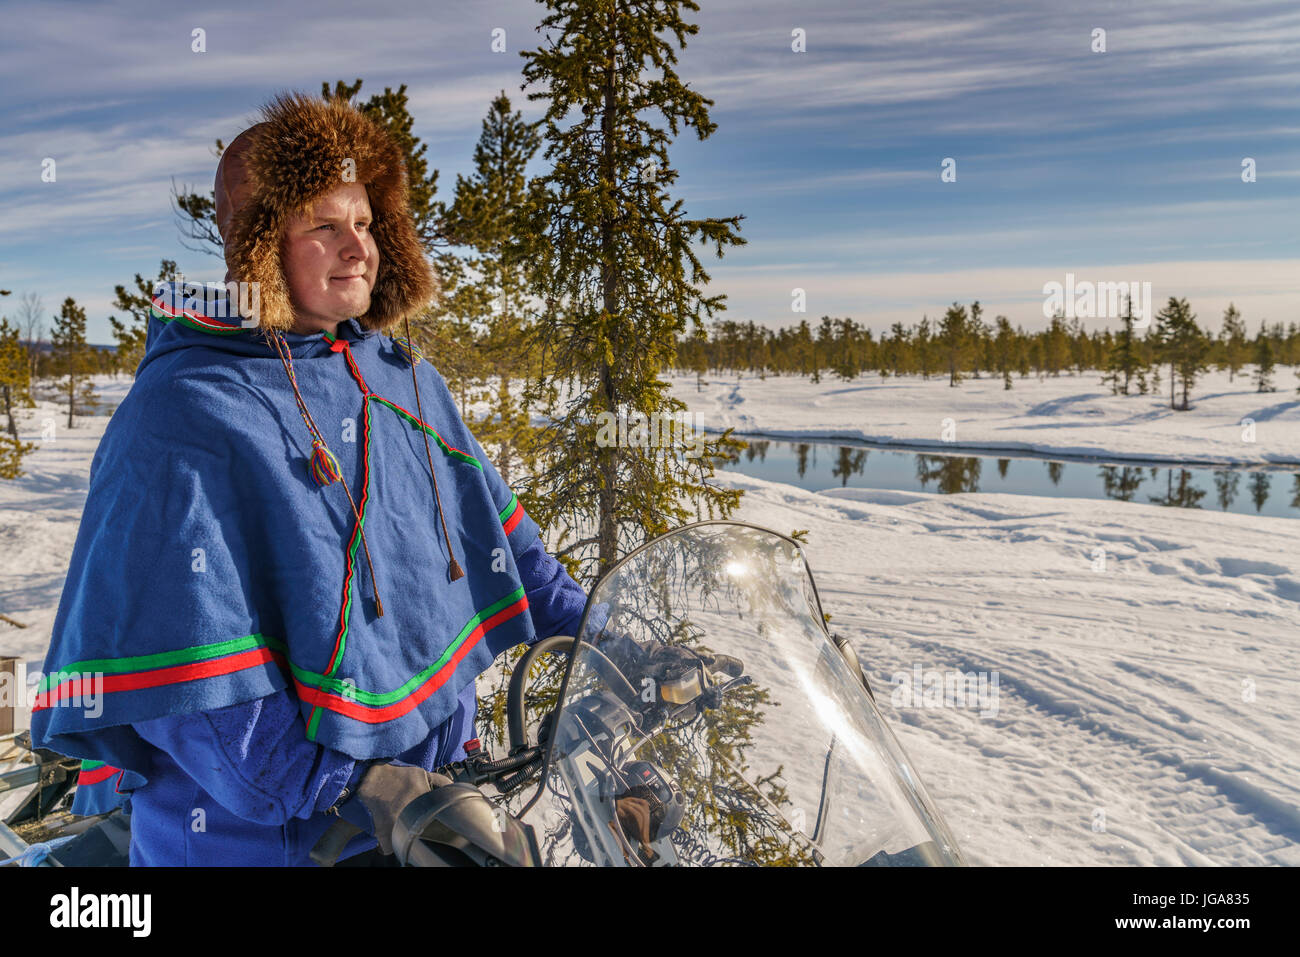 Man in traditional dress Sami sur une motoneige, Laponie, Suède Banque D'Images